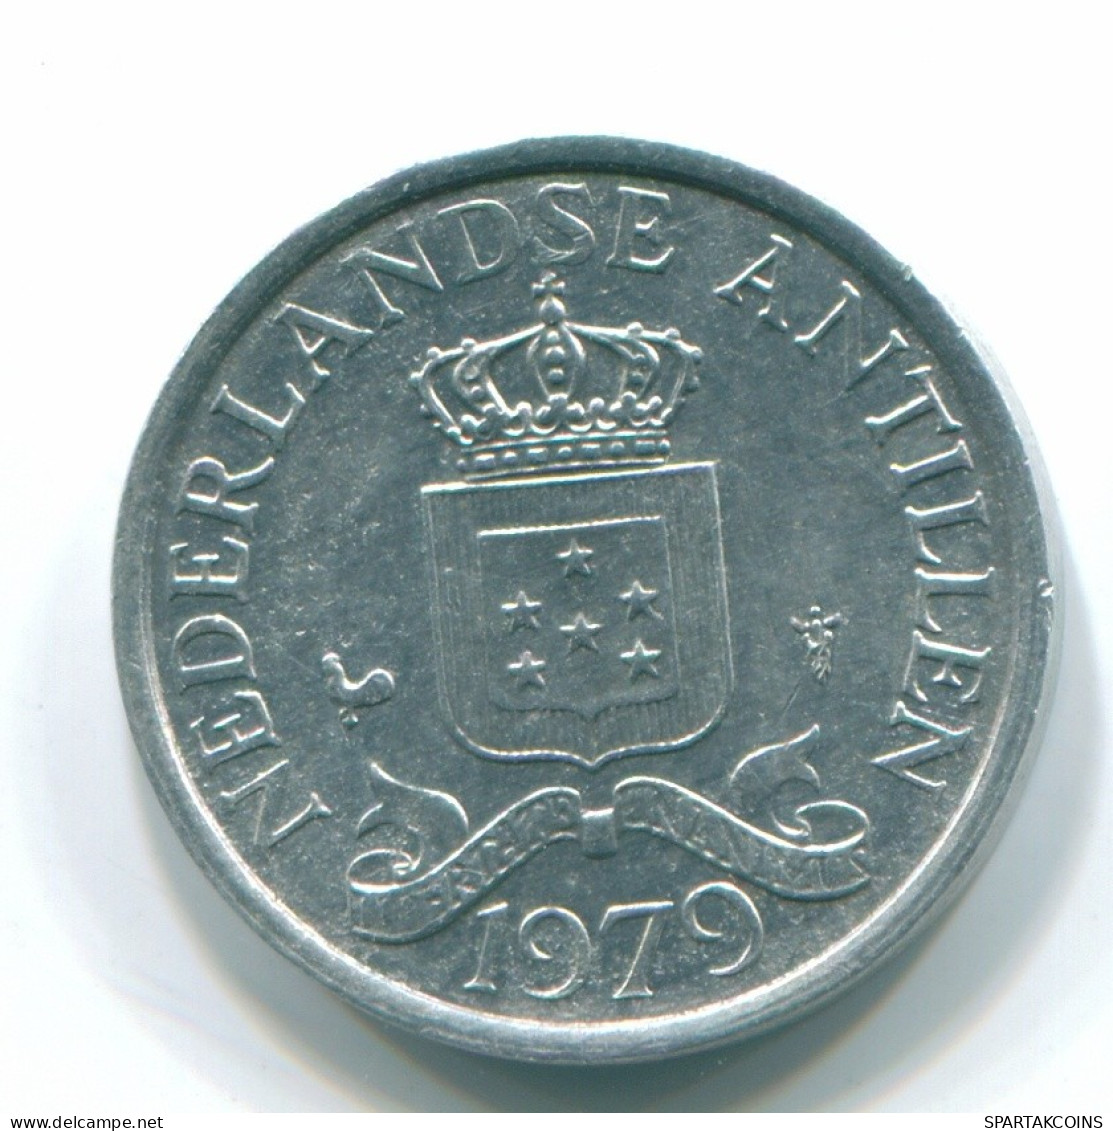 1 CENT 1979 NIEDERLÄNDISCHE ANTILLEN Aluminium Koloniale Münze #S11172.D.A - Niederländische Antillen